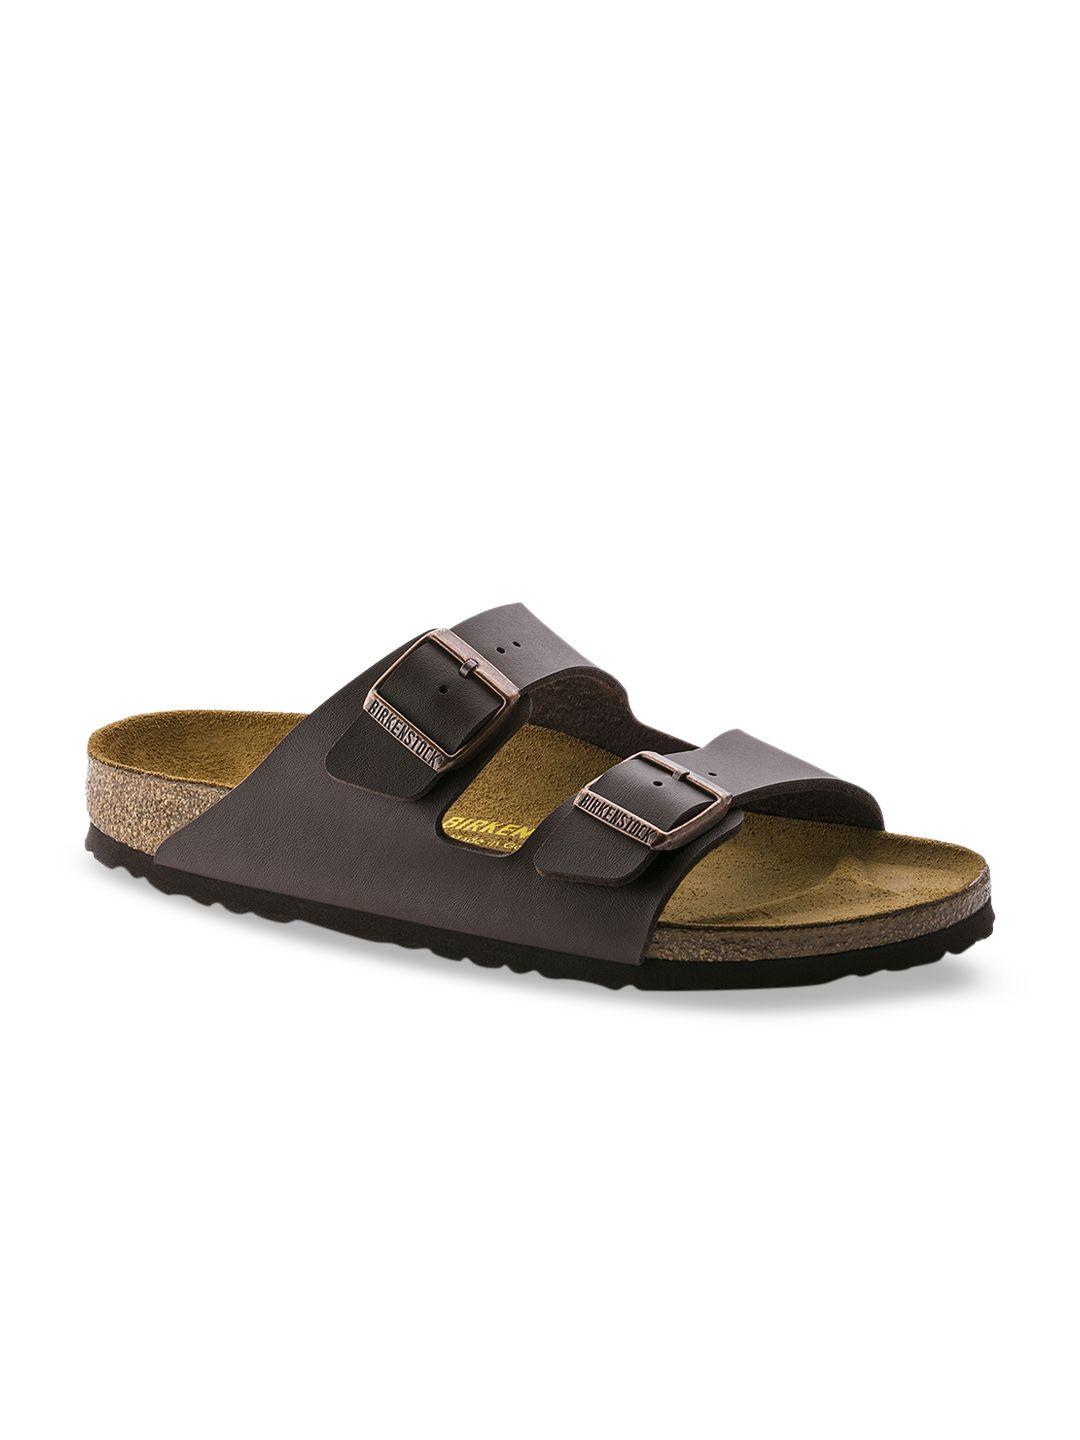 birkenstock unisex brown arizona birko-flor narrow width sandals